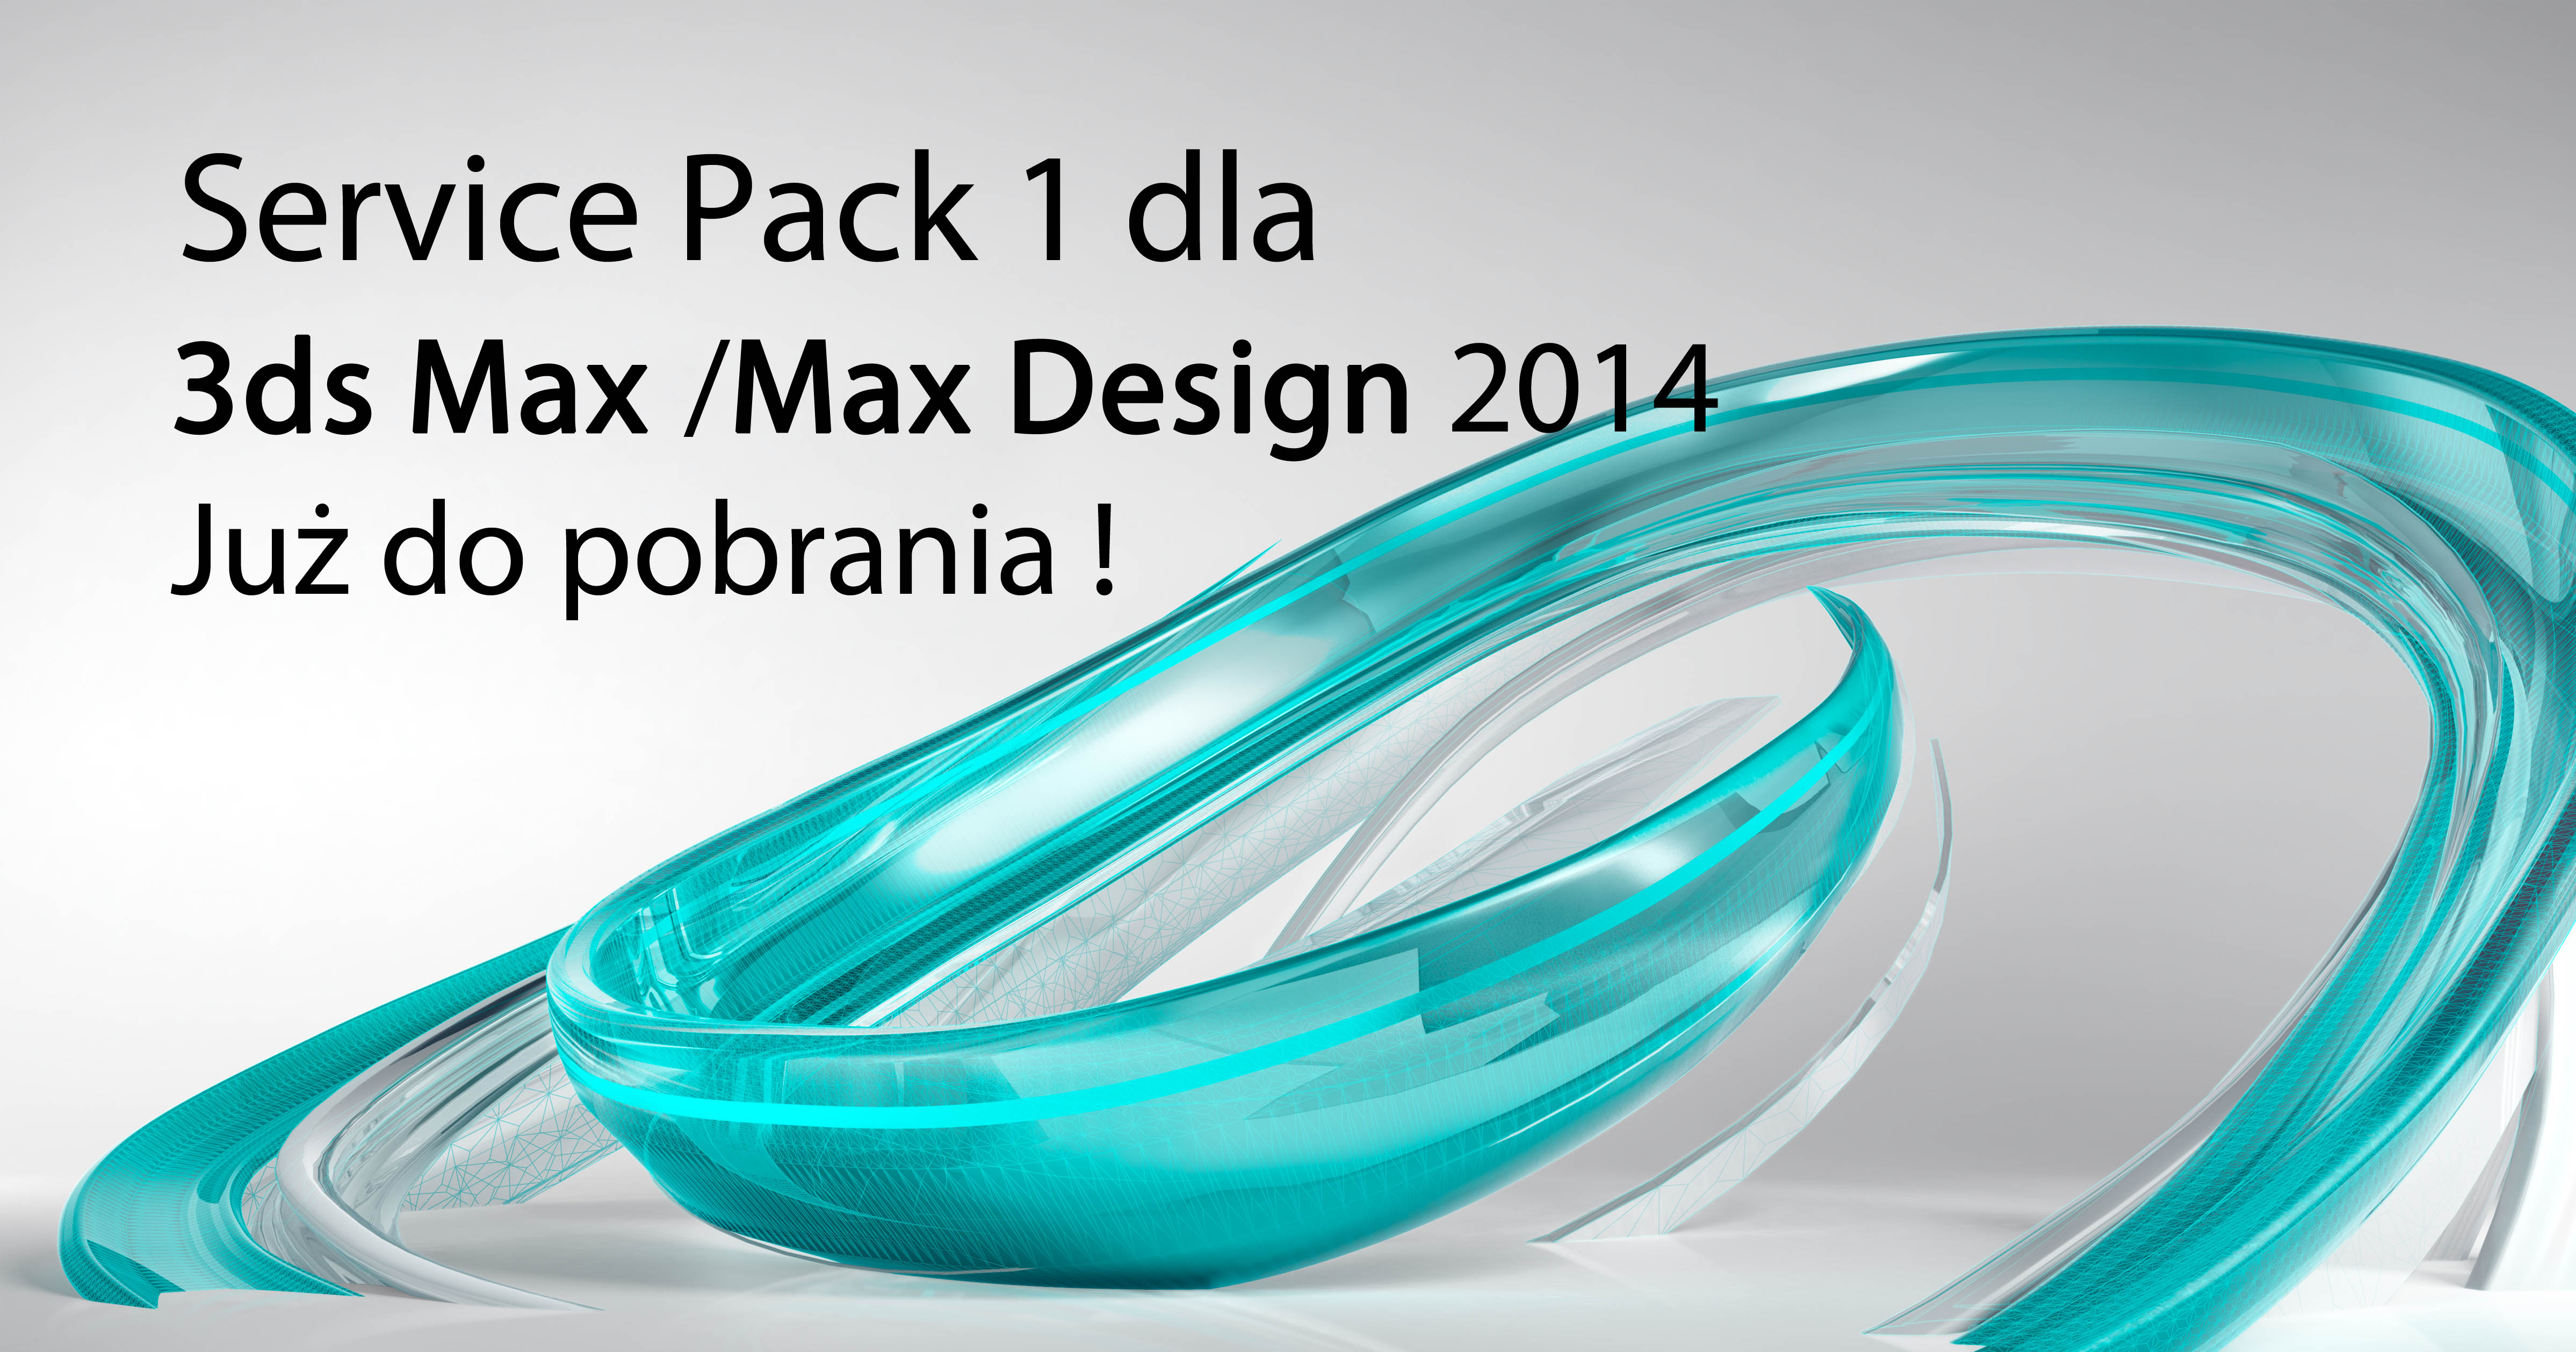 Max design value 3276895 max design value